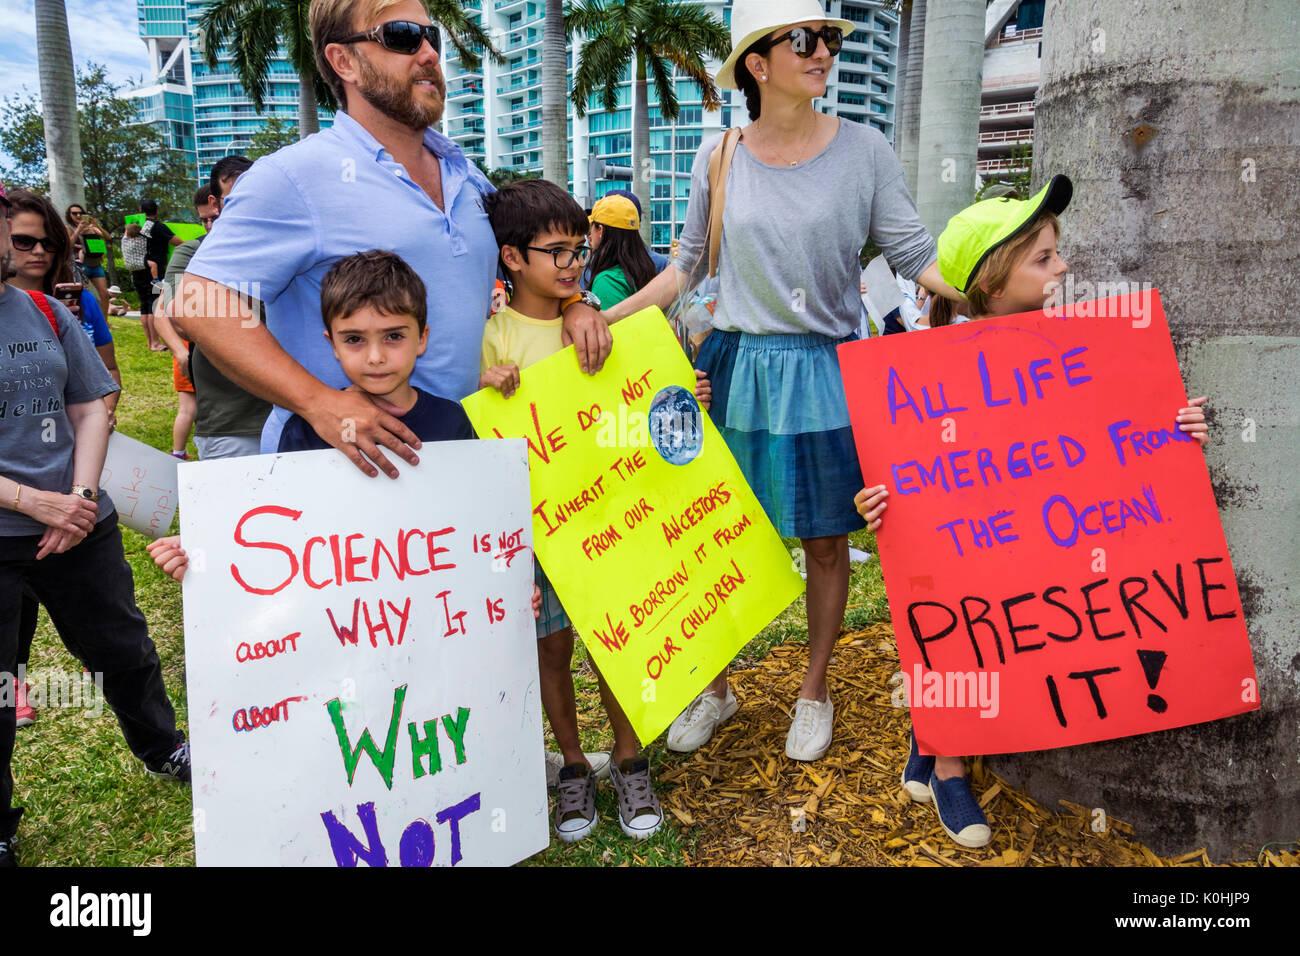 Miami Florida, Museumspark, Wissenschaftsmarsch, Protest, Kundgebung, Schild, Plakat, Protestler, Familie Familien Eltern Eltern Kinder, Jungen, männliche Kinder c Stockfoto